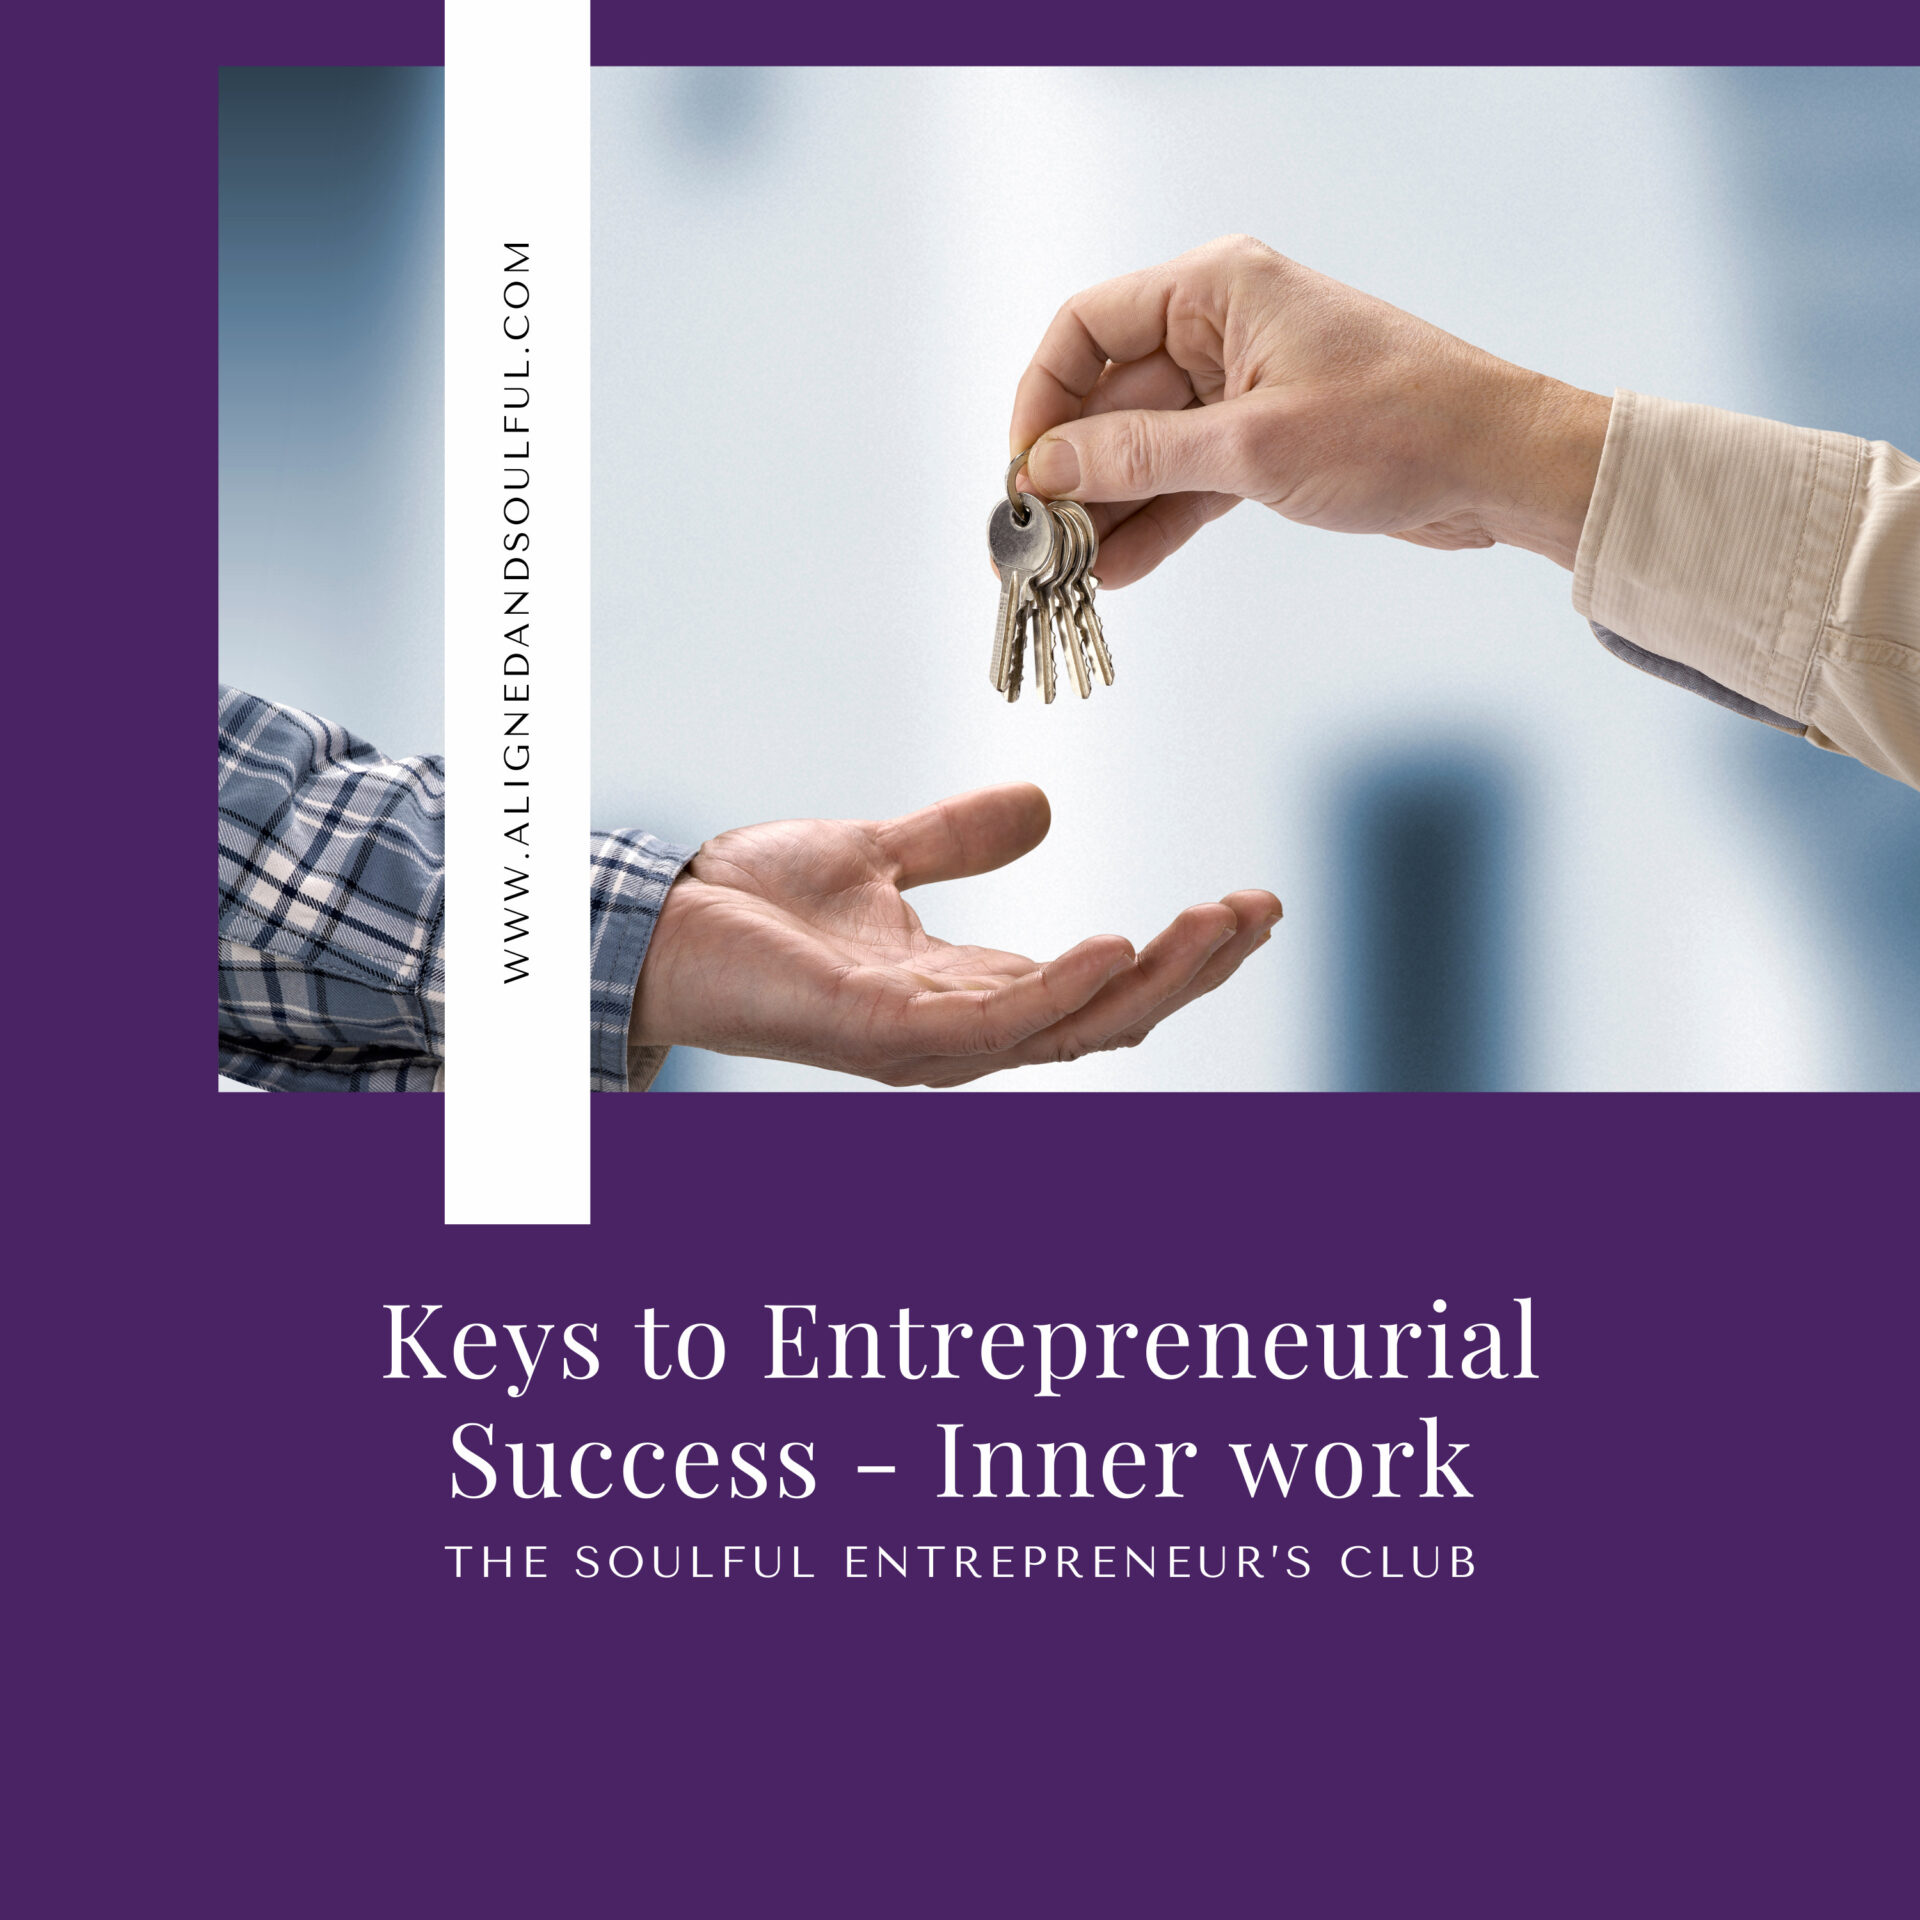 Keys to Entrepreneurial Success - Inner work